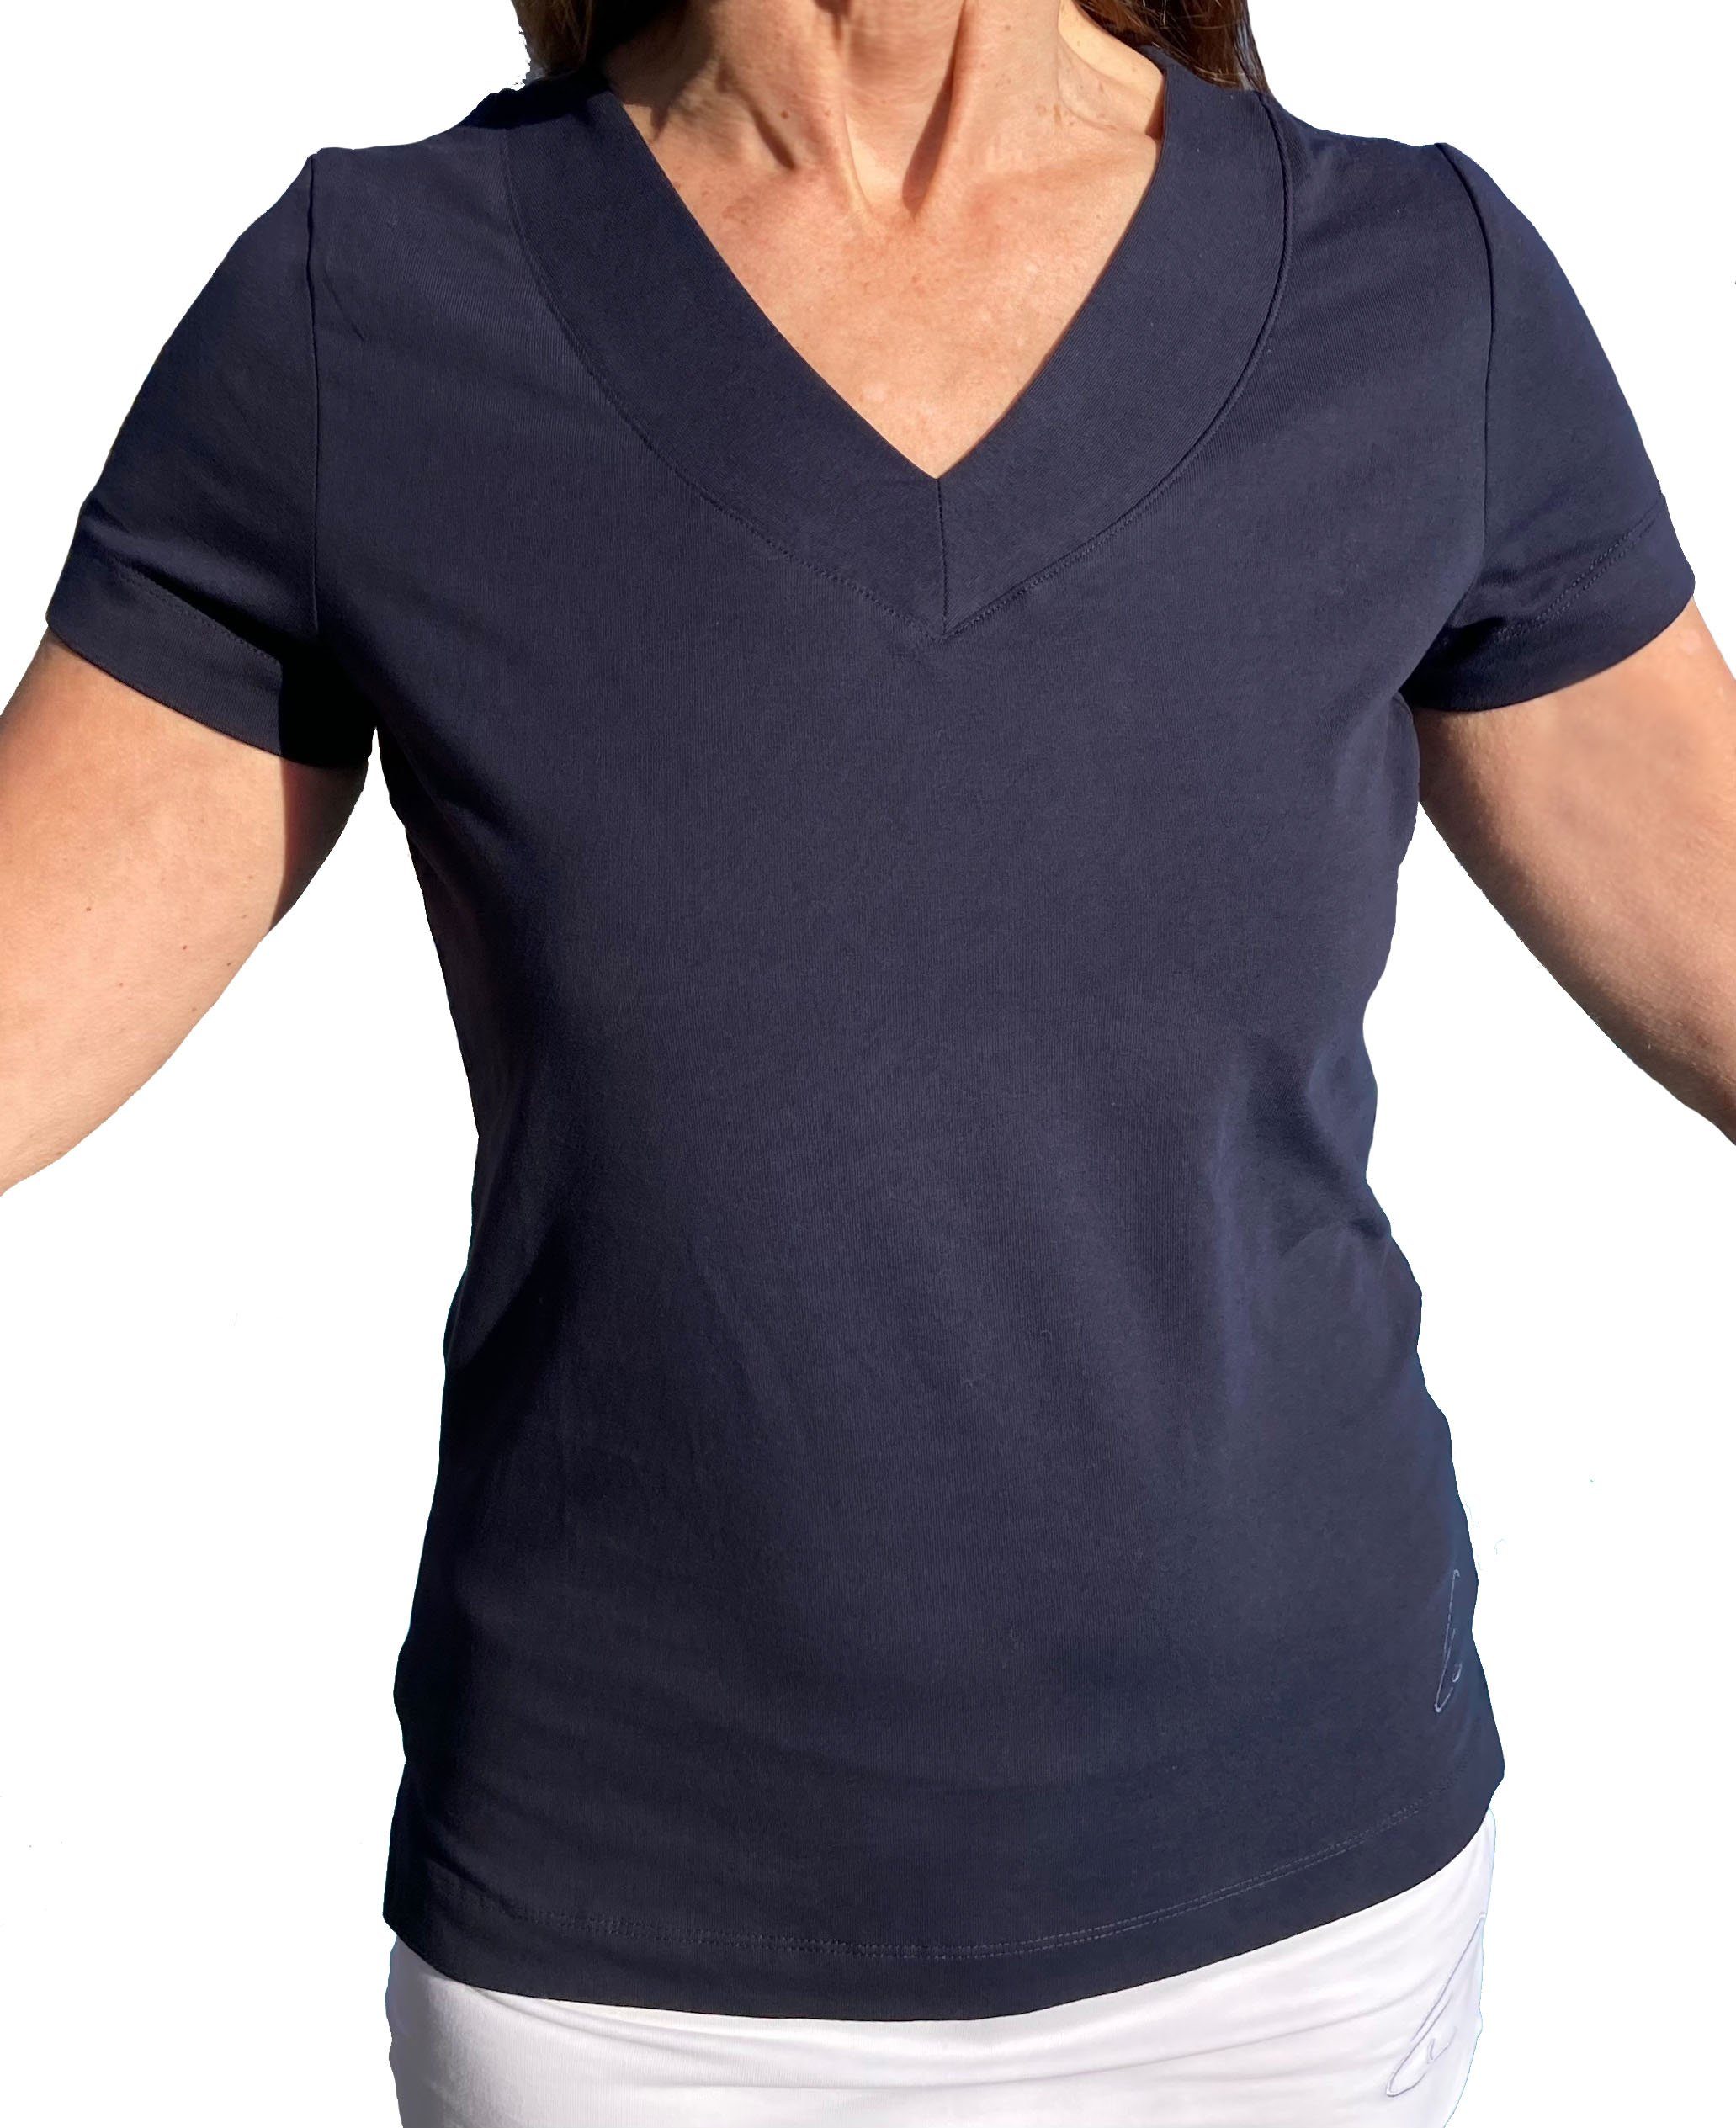 Farishta unten Yogashirt Yoga Bio-Baumwolle in mit geschlitzt Ärmeln, kurzen ESPARTO V-Shirt Nachtblau V-Shirt